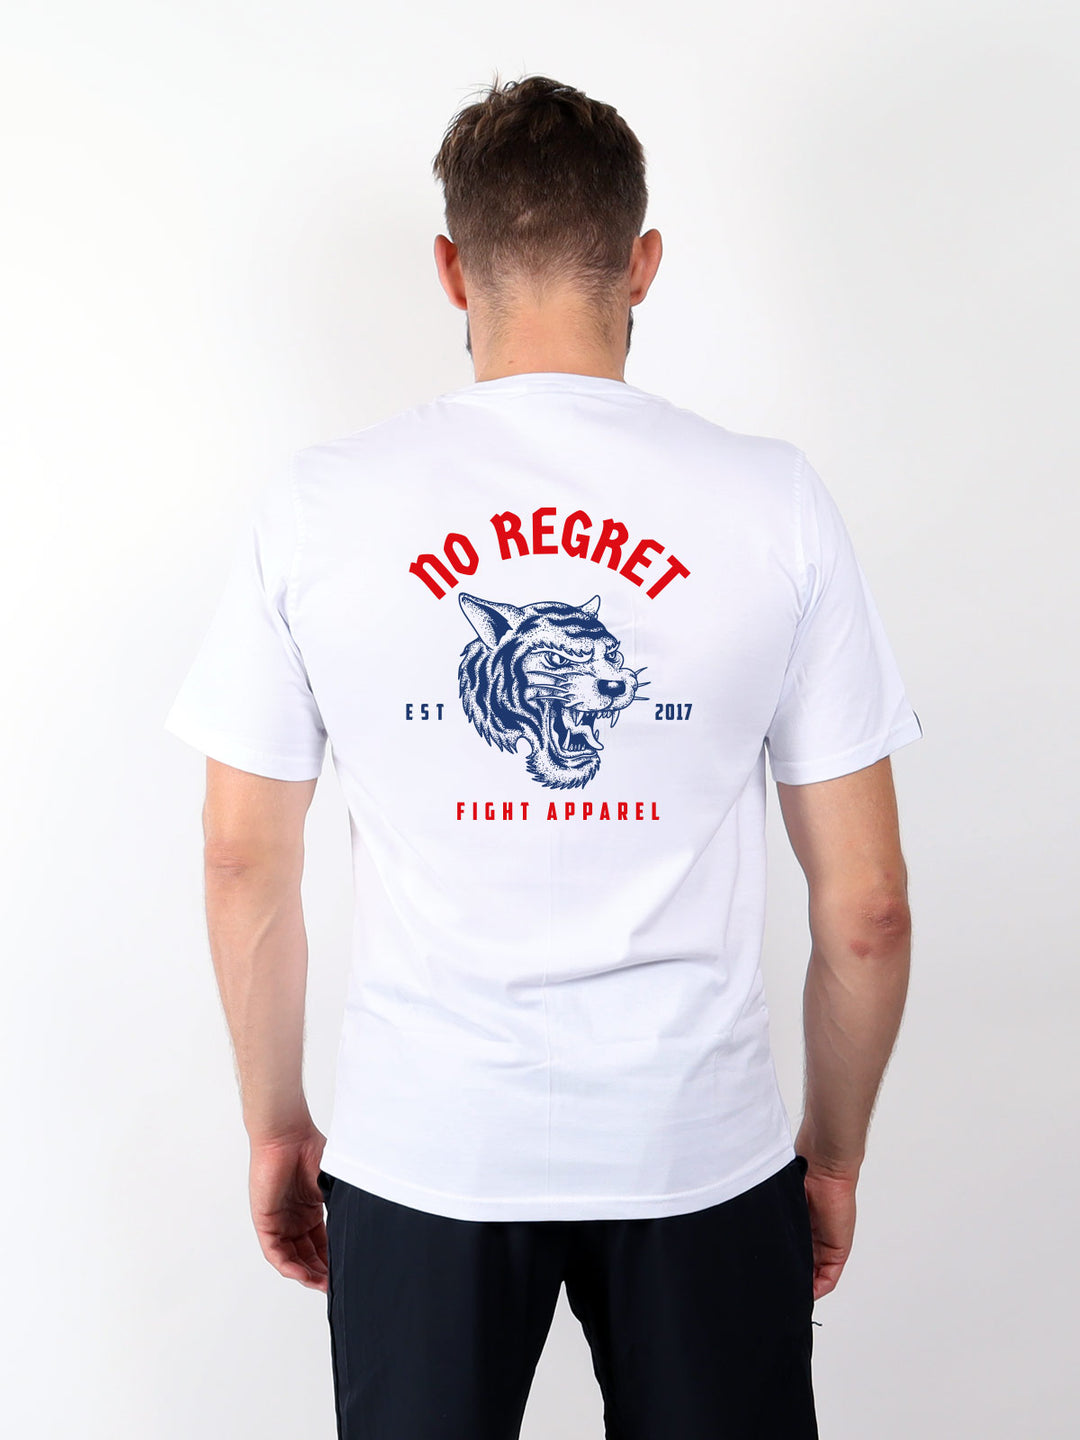 FA - No Regret - V2.0 Shirt - White